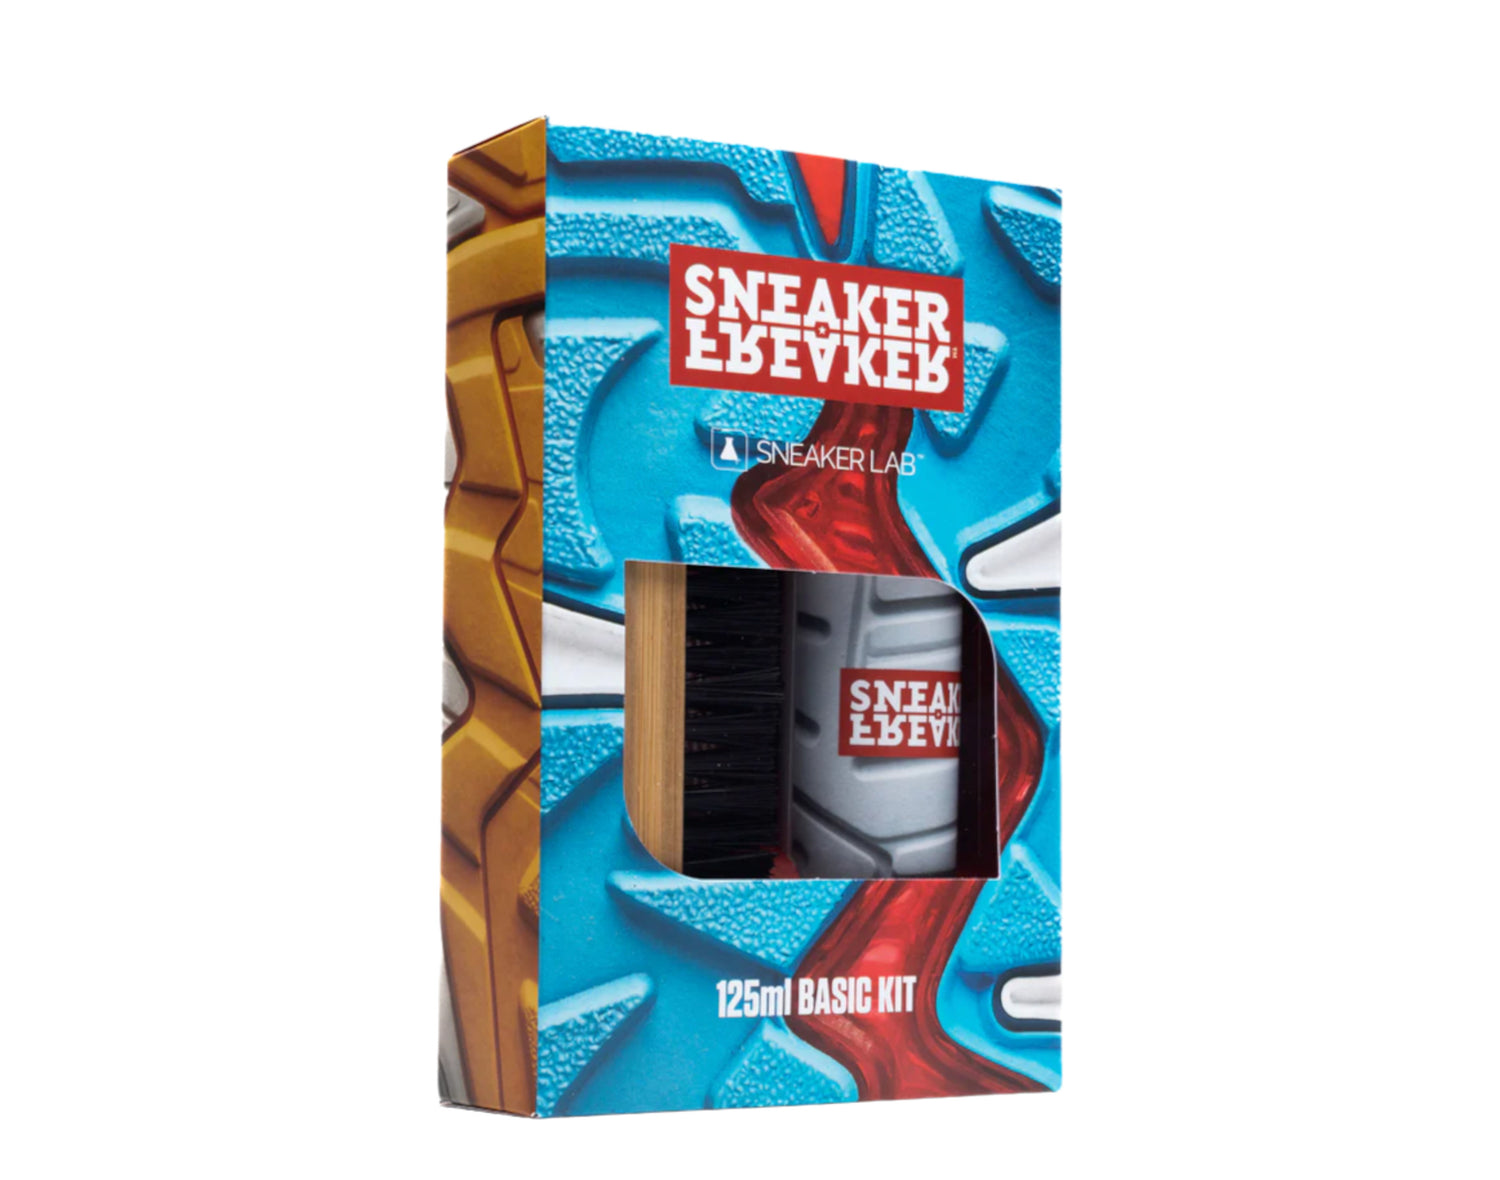 Sneaker Freaker x Sneaker Basic Kit 125ml - Clean - Care - Protect